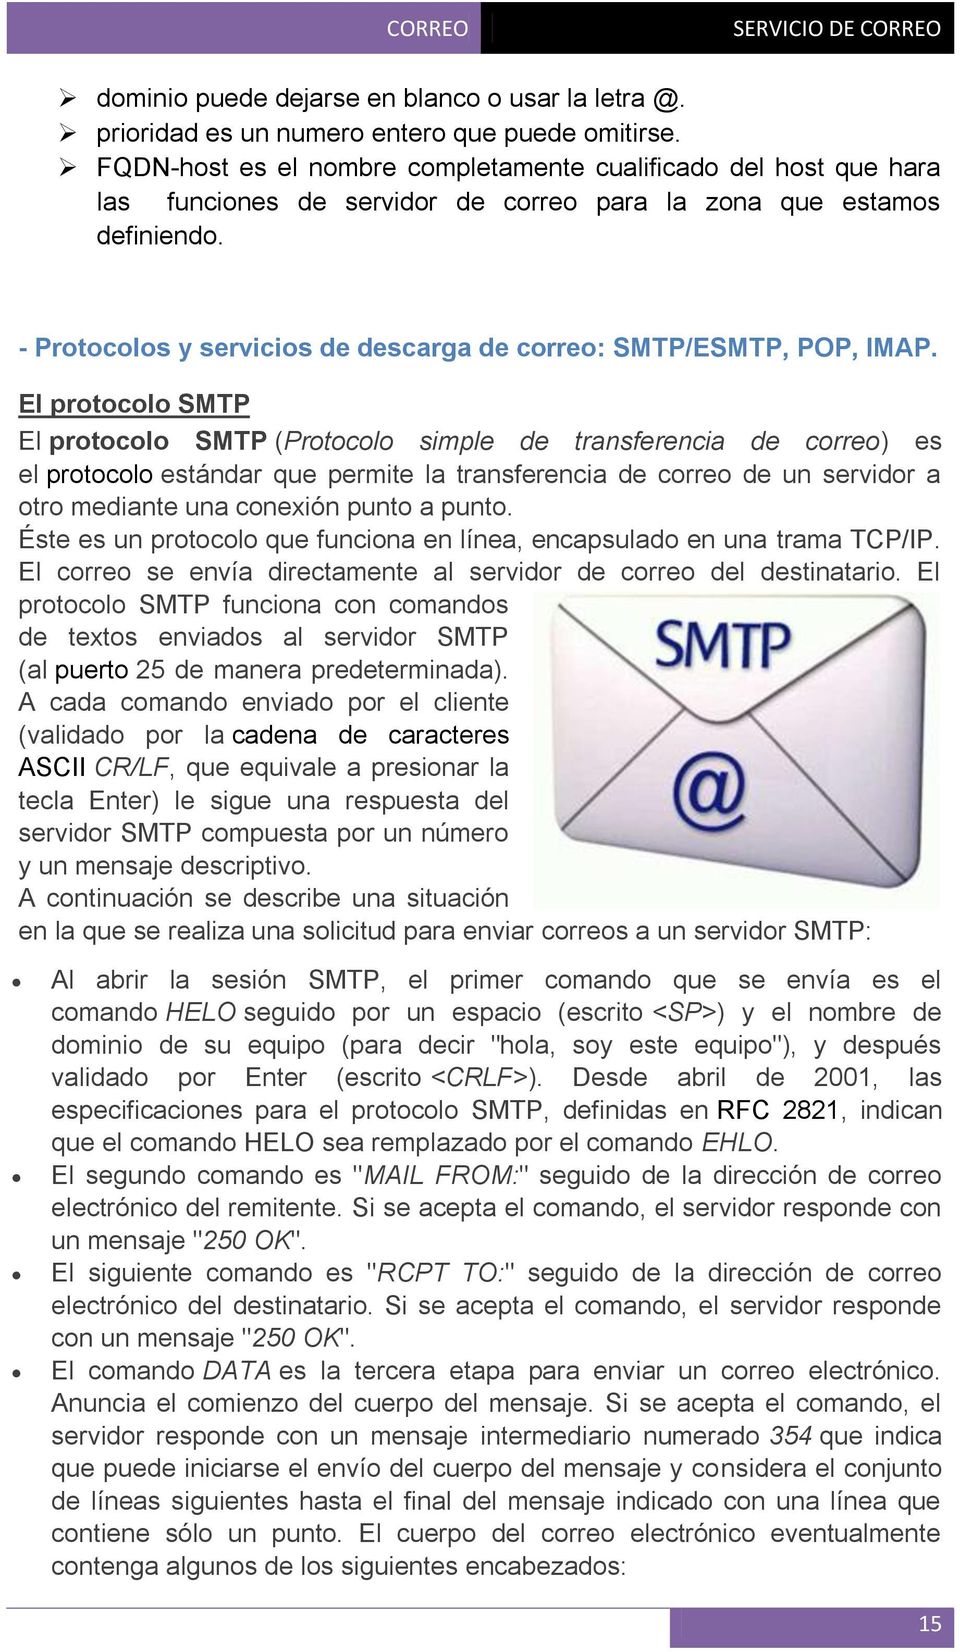 - Protocolos y servicios de descarga de correo: SMTP/ESMTP, POP, IMAP.